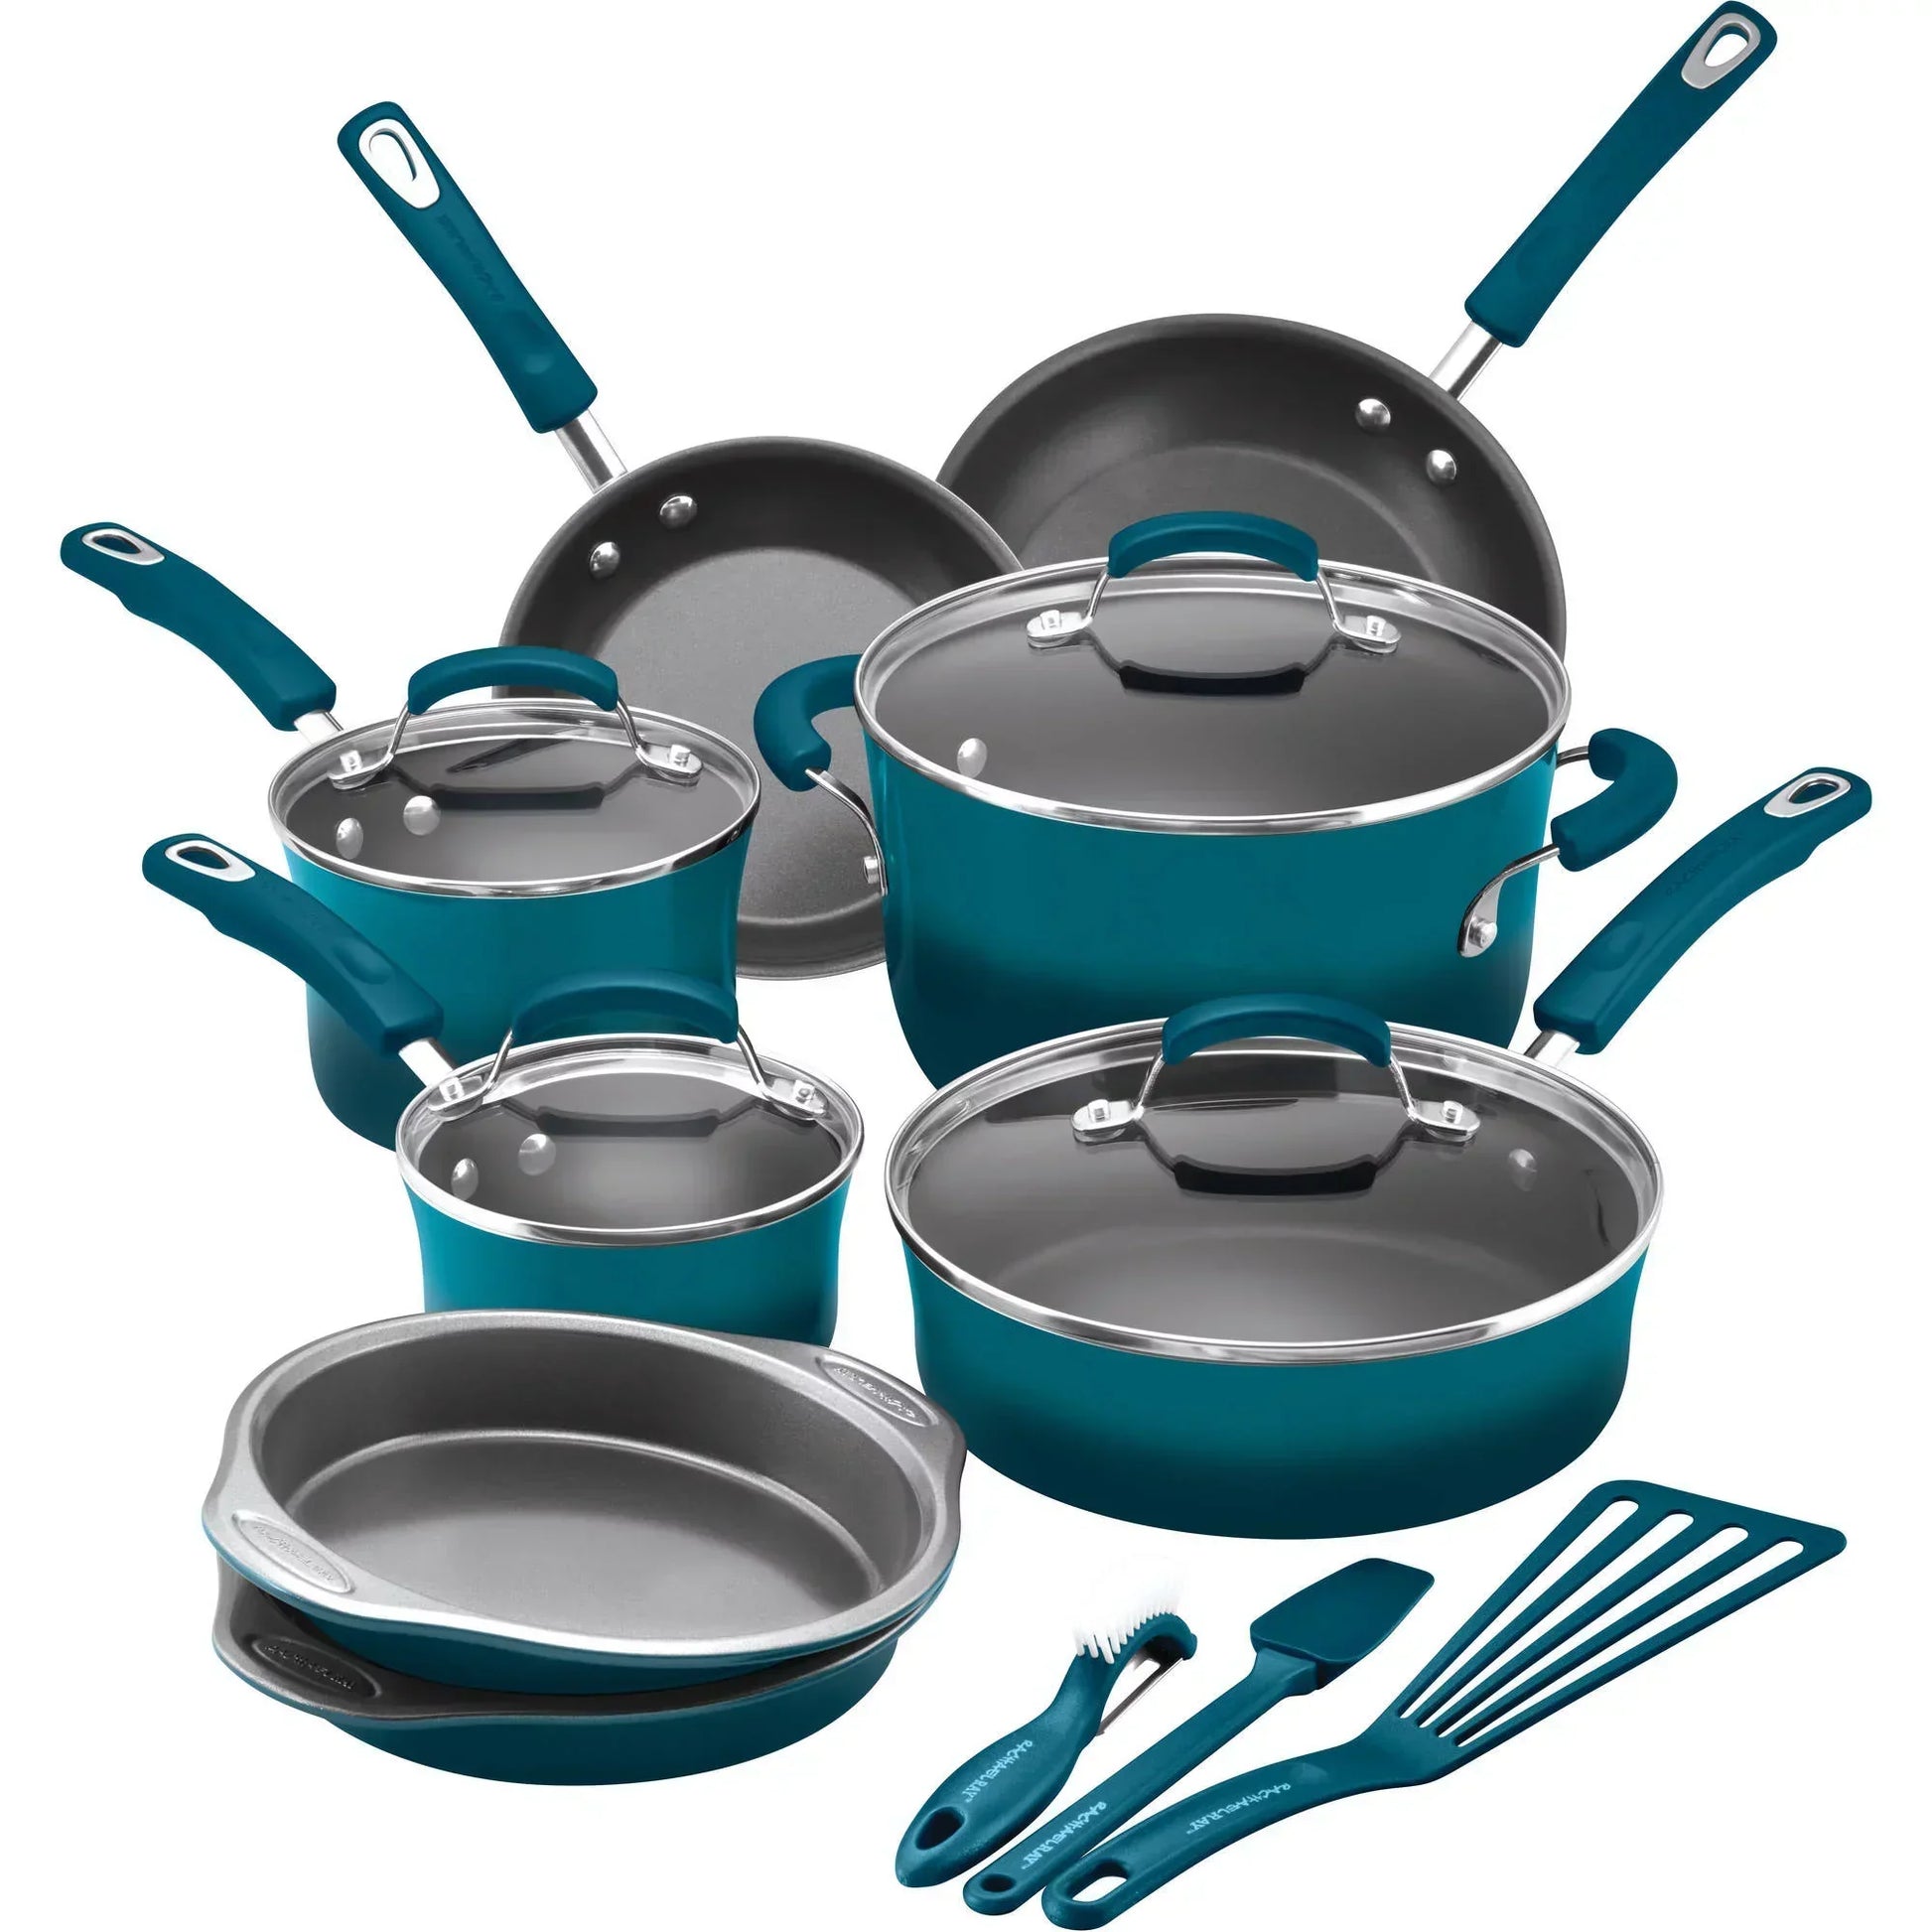 Cucina 12-Piece Nonstick Cookware Set  Cookware set, Nonstick cookware,  Pots and pans sets